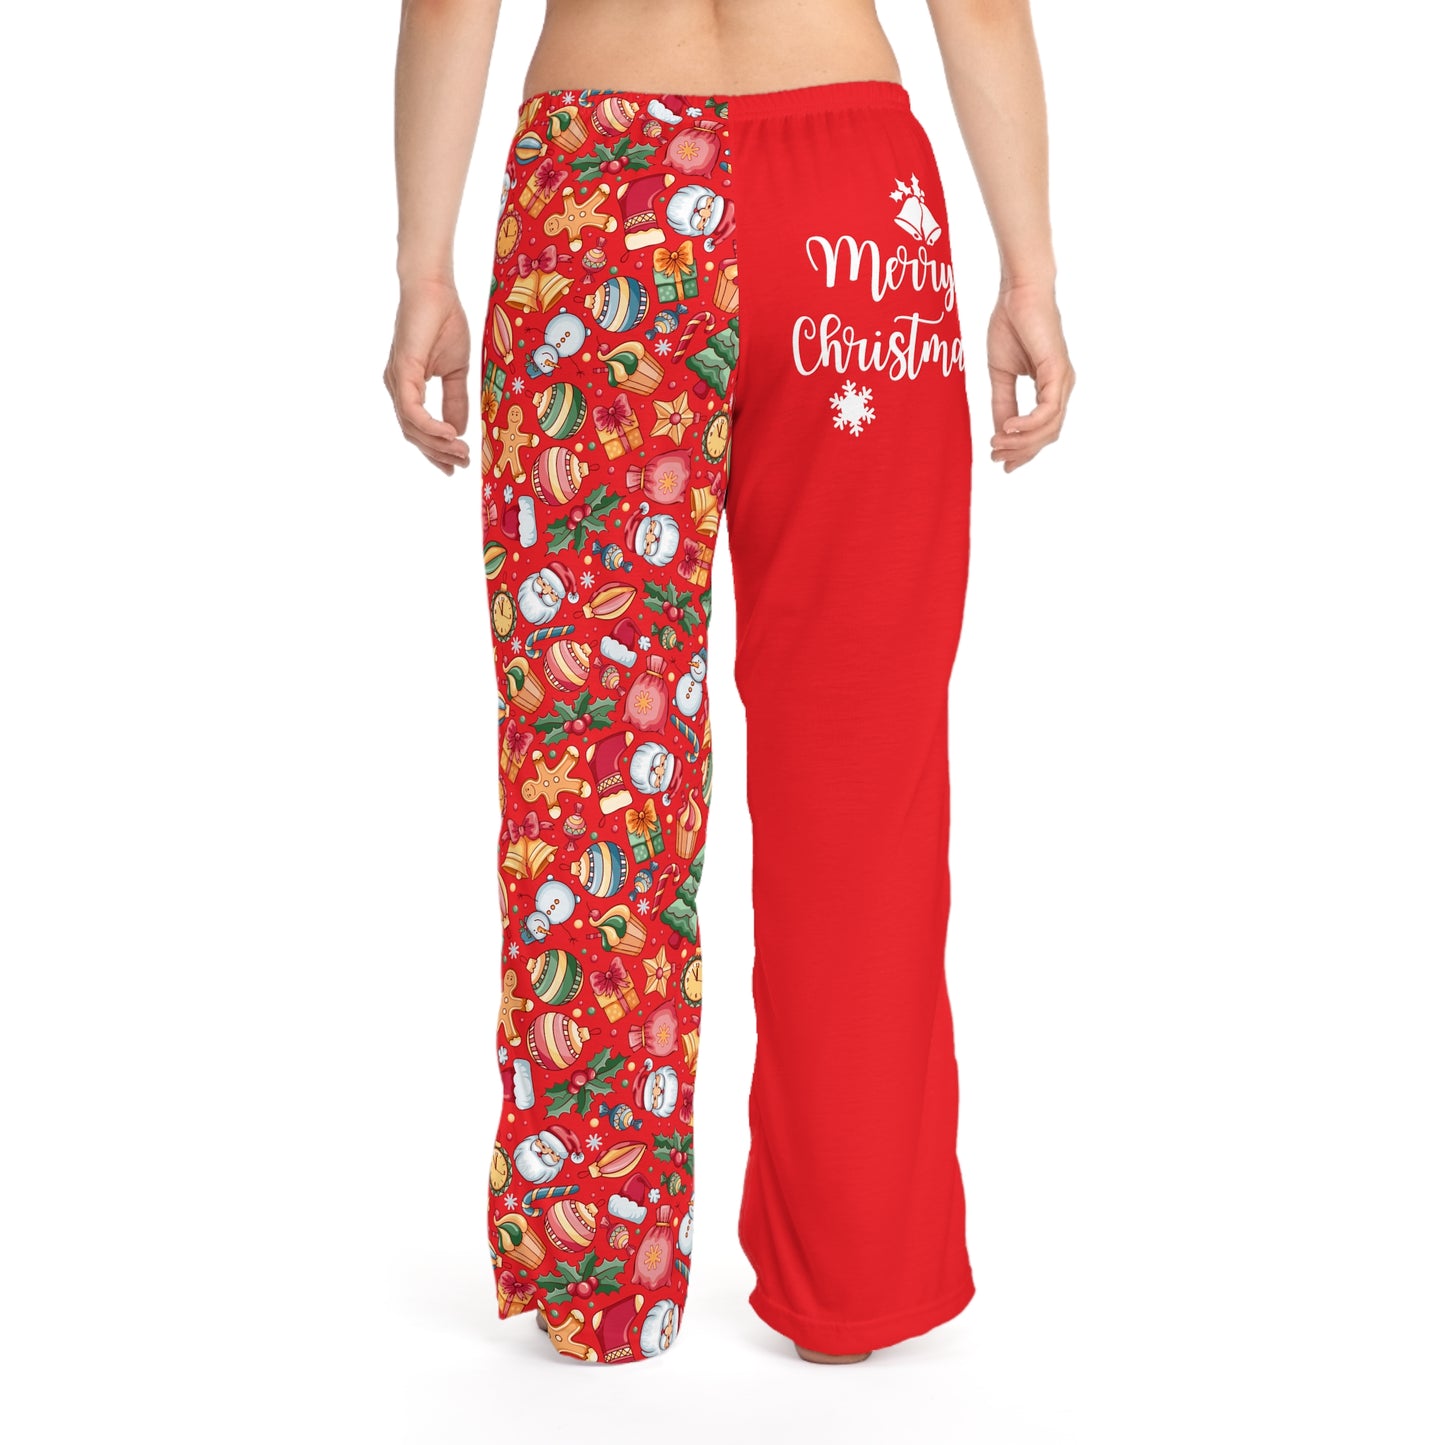 Mama Christmas Pajama Pants